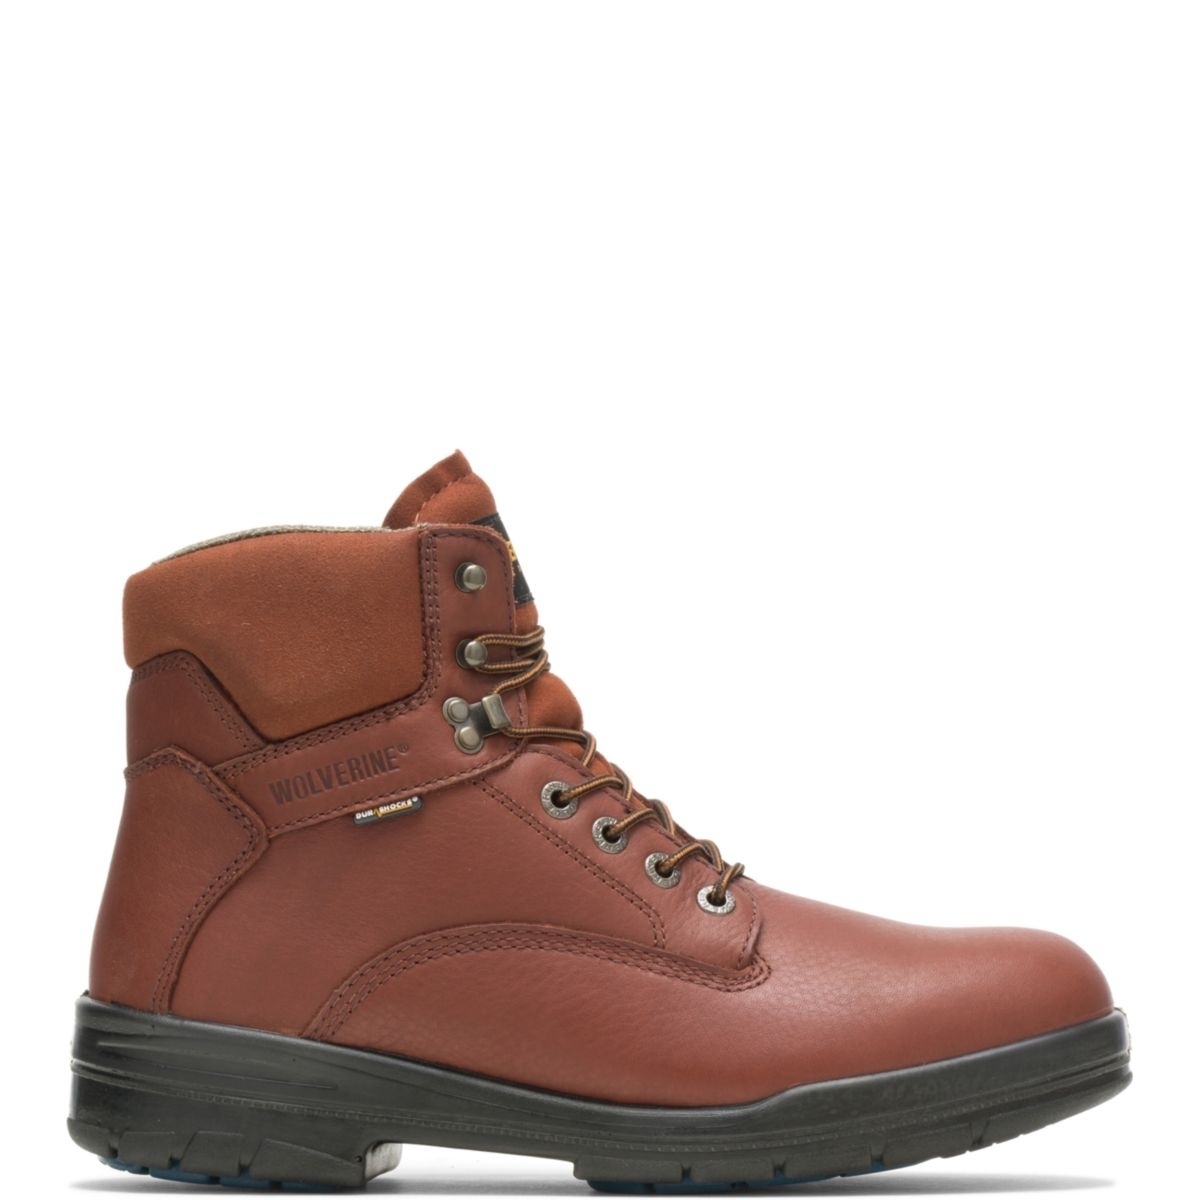 WOLVERINE Men's 6 DuraShocksÂ® Steel Toe Direct-Attach Work Boot Brown - W03120 BROWN - BROWN, 7